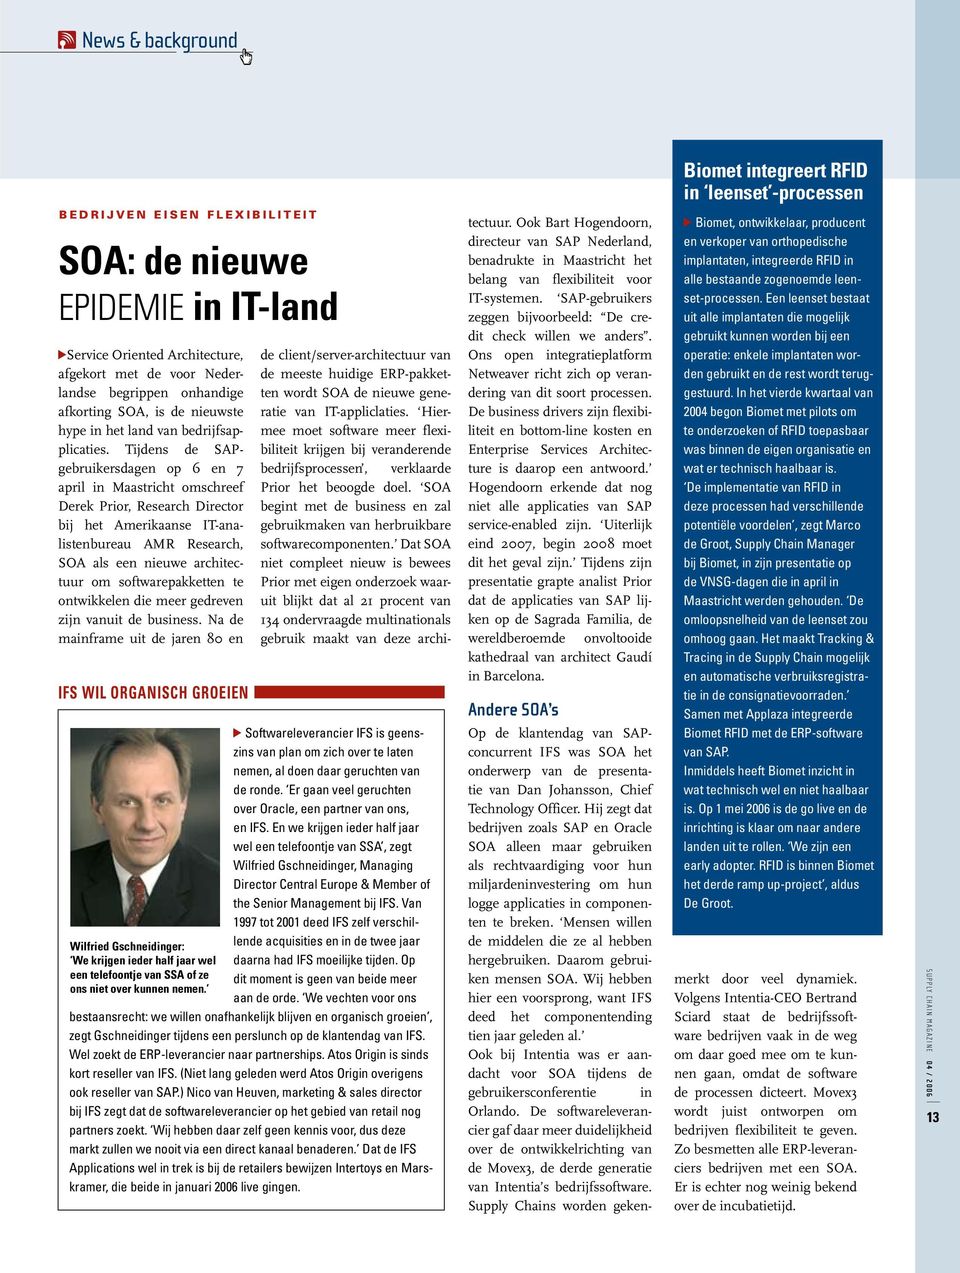 Tijdens de SAPgebruikersdagen op 6 en 7 april in Maastricht omschreef Derek Prior, Research Director bij het Amerikaanse IT-analistenbureau AMR Research, SOA als een nieuwe architectuur om